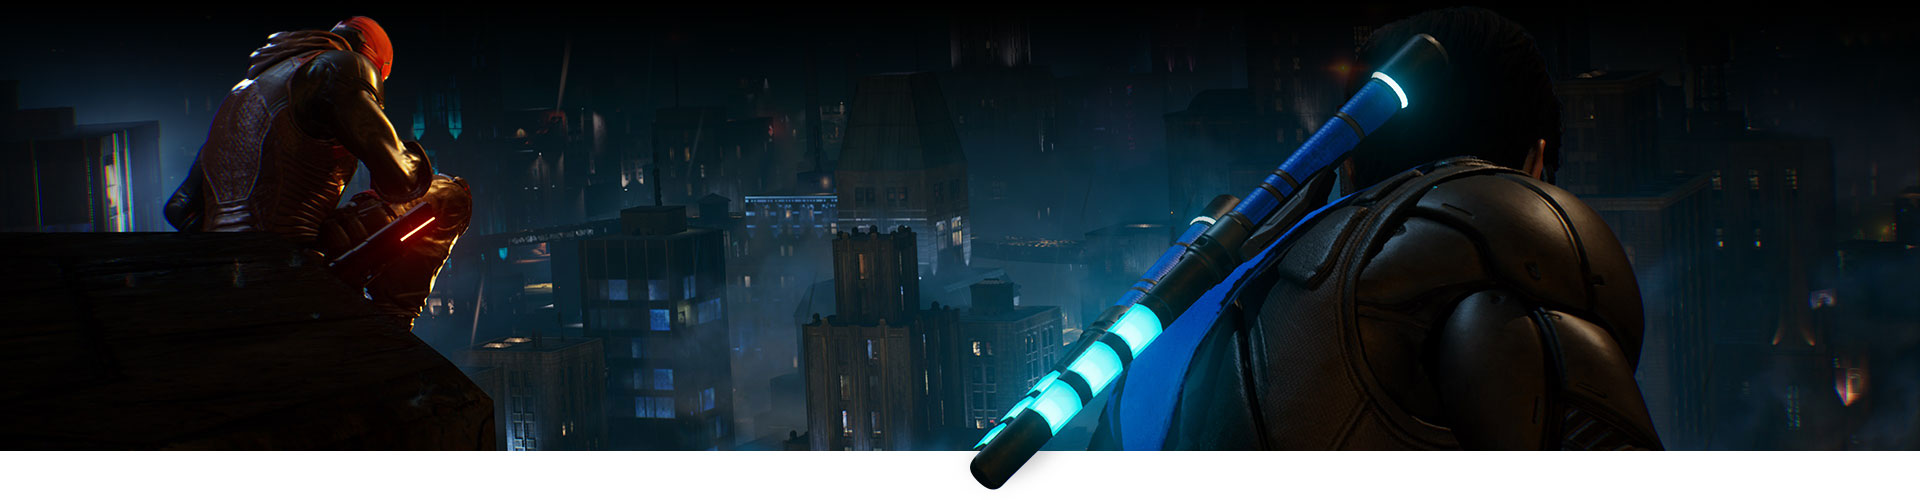 Red Hood og Nightwing sitter på et tak og ser ut over byen.